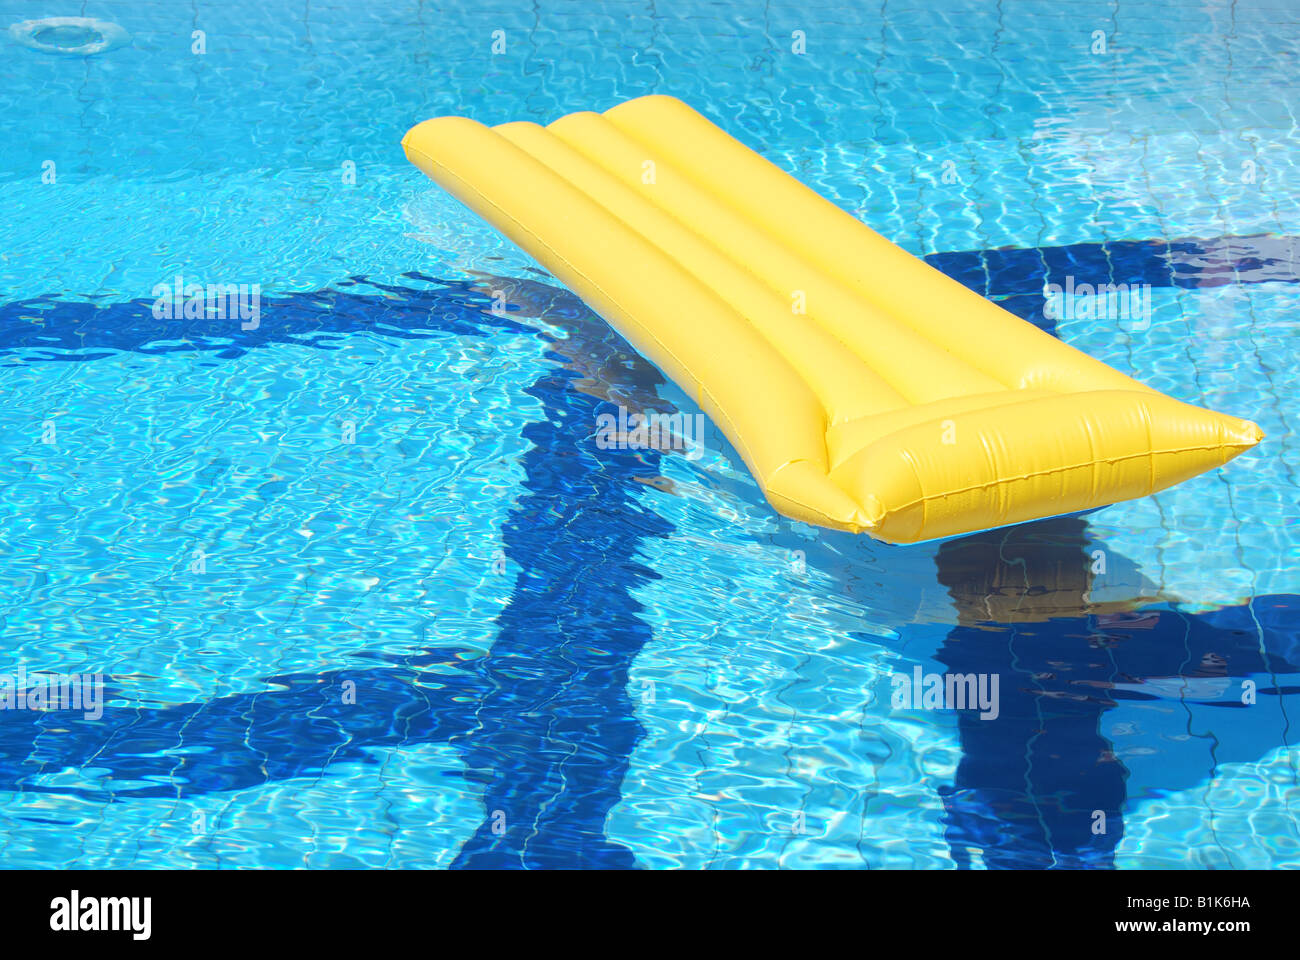 Gelbe Luftmatratze Lilo schwimmend im Pool Stockfotografie - Alamy